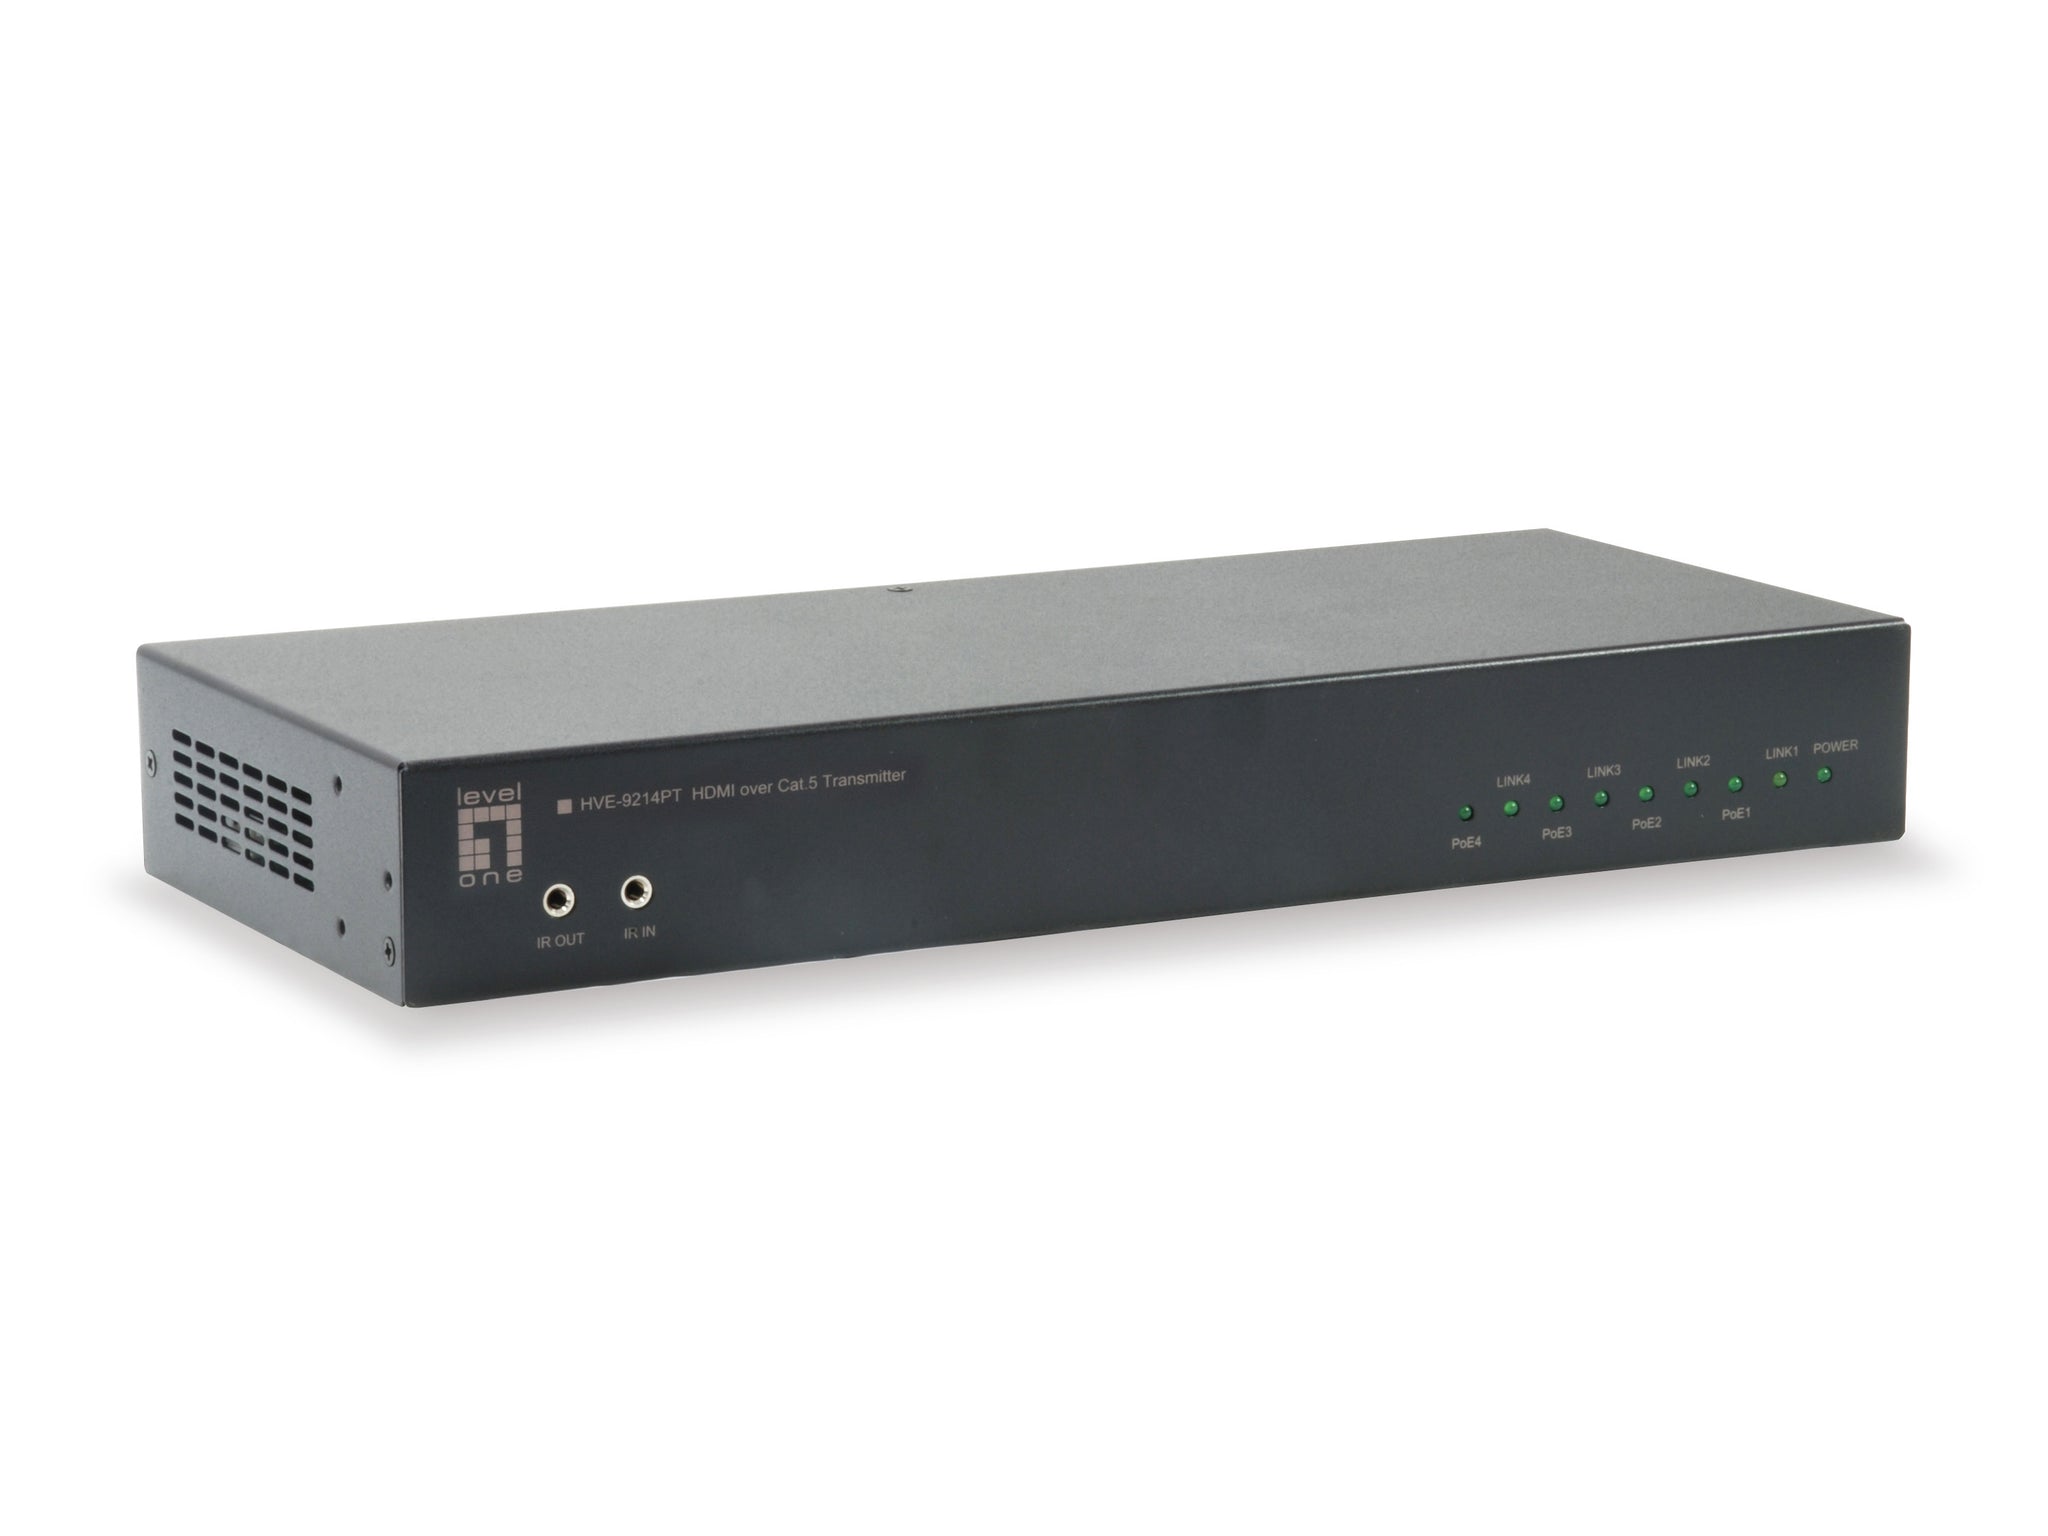 HVE-9214PT HDMI over Cat.5 Transmitter, HDBaseT, 100m, 4 Channel Outputs, 802.3af PoE